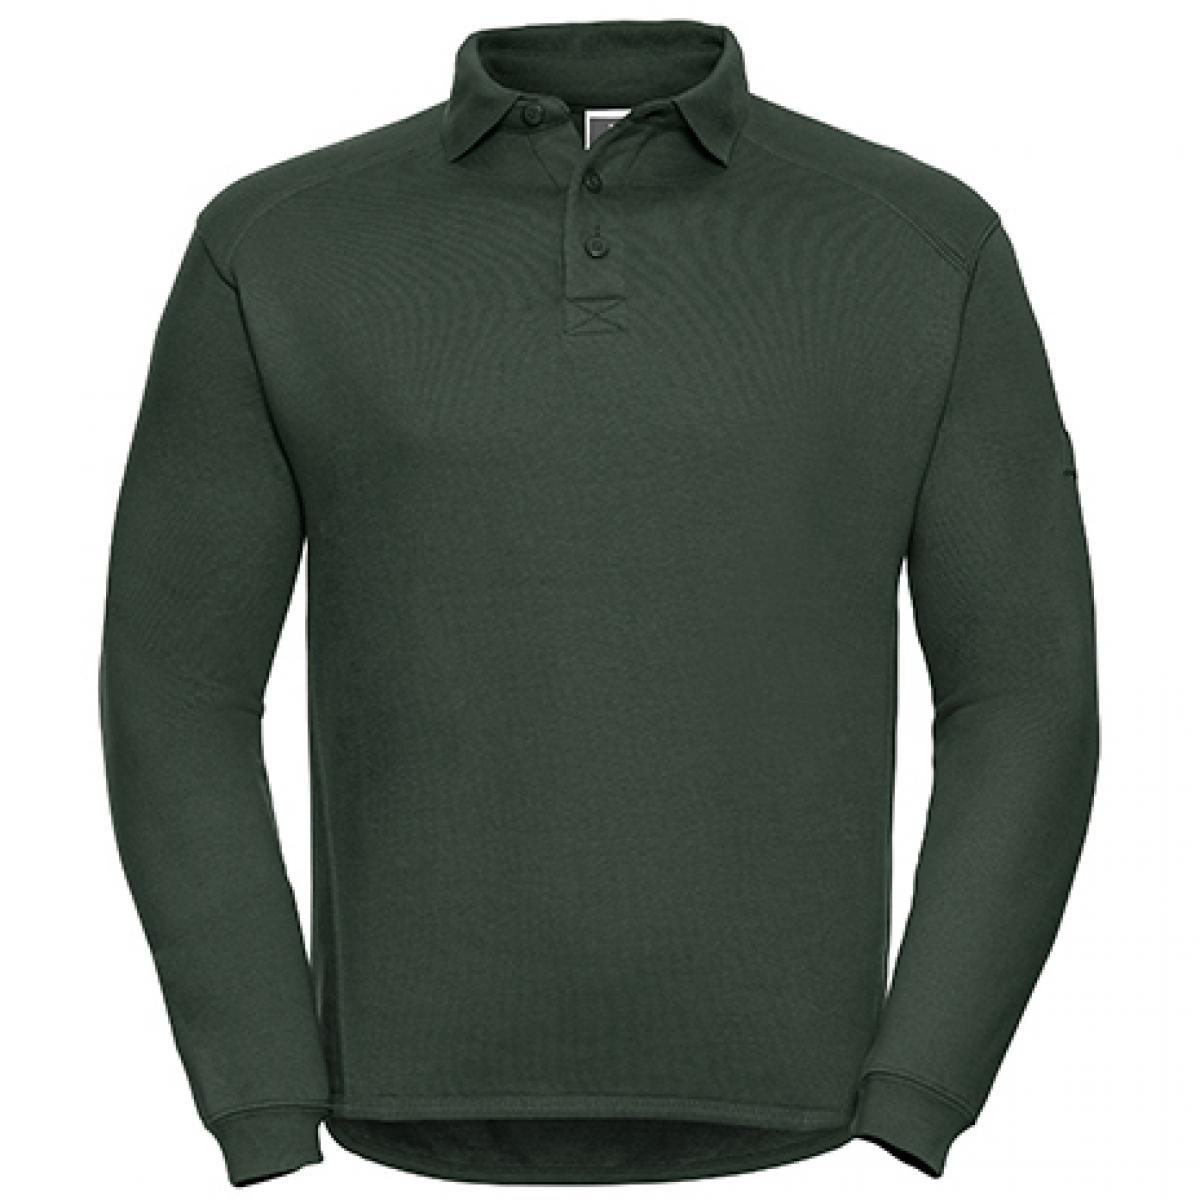 Hersteller: Russell Herstellernummer: R-012M-0 Artikelbezeichnung: Herren Workwear-Poloshirt - Waschbar bis 60 °C - bis 4XL Farbe: Bottle Green